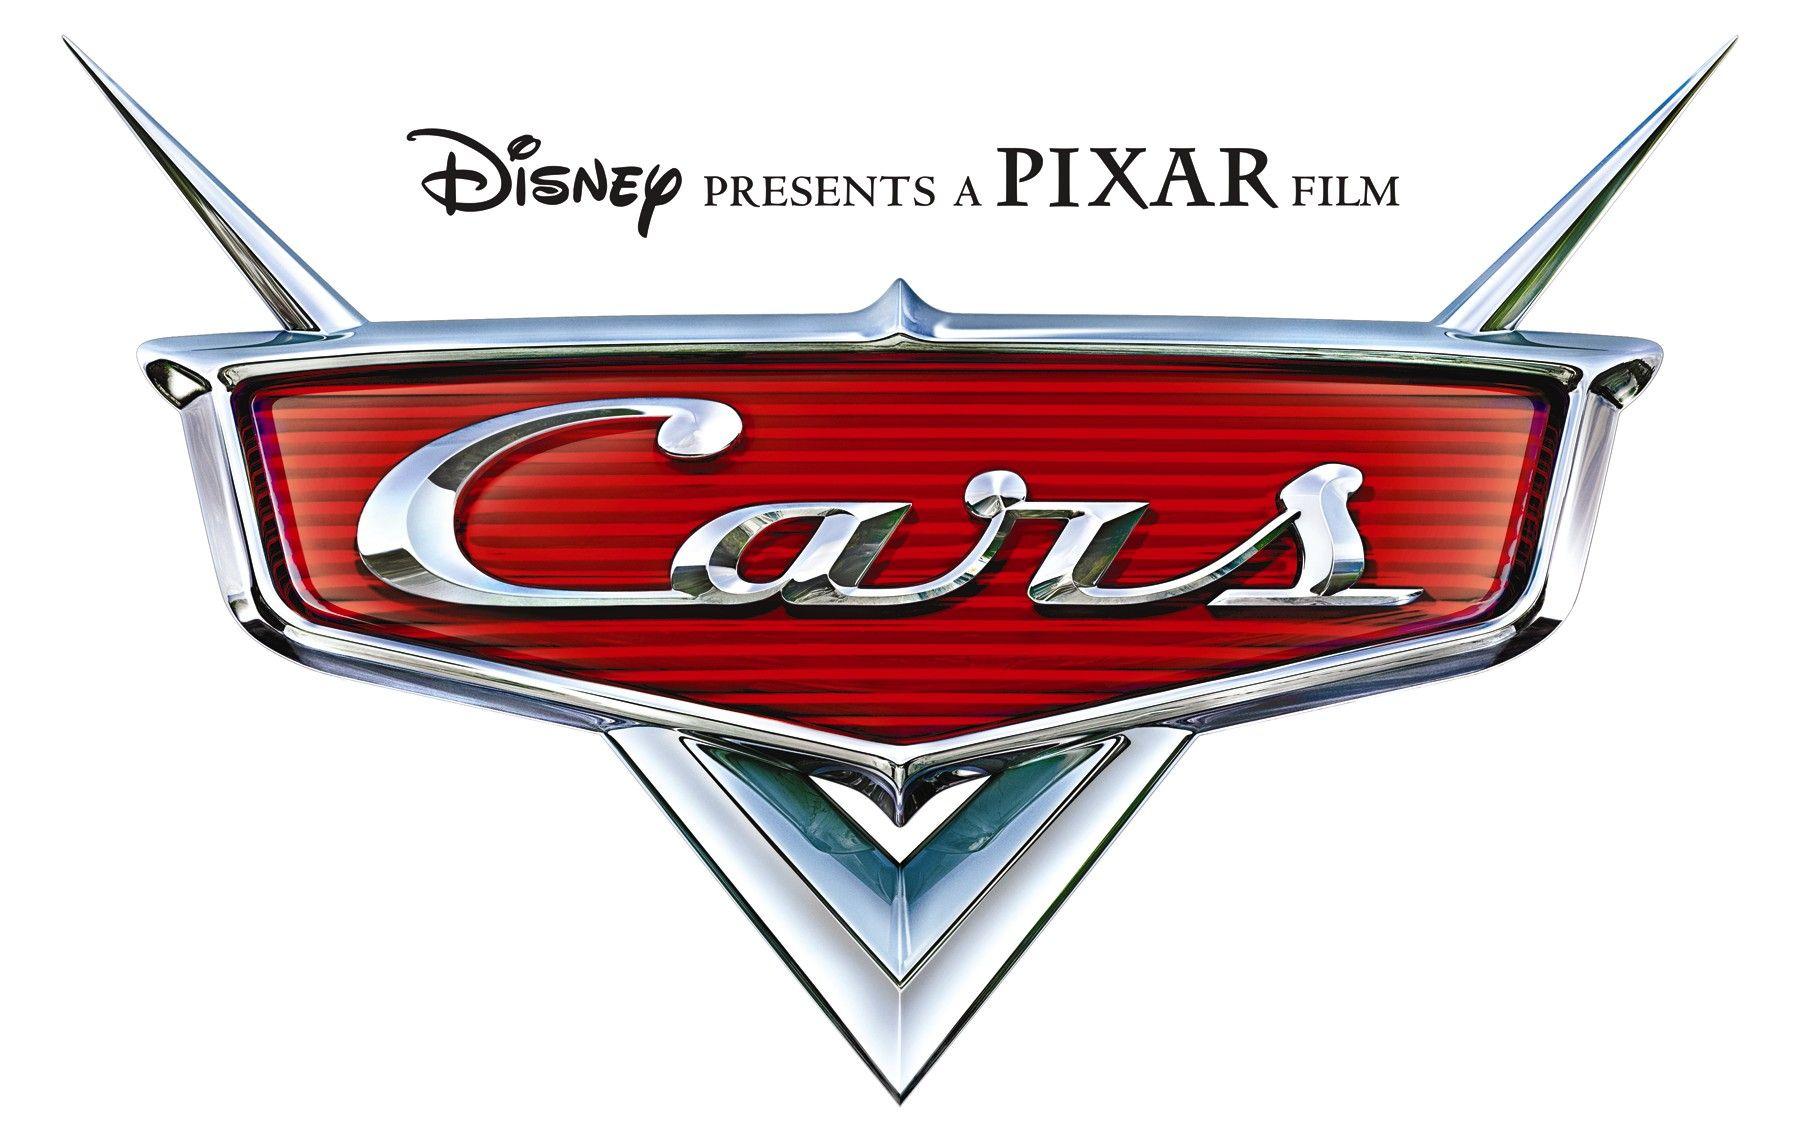 Disney Pixar Films Logo - Cars (series) | Logopedia | FANDOM powered by Wikia